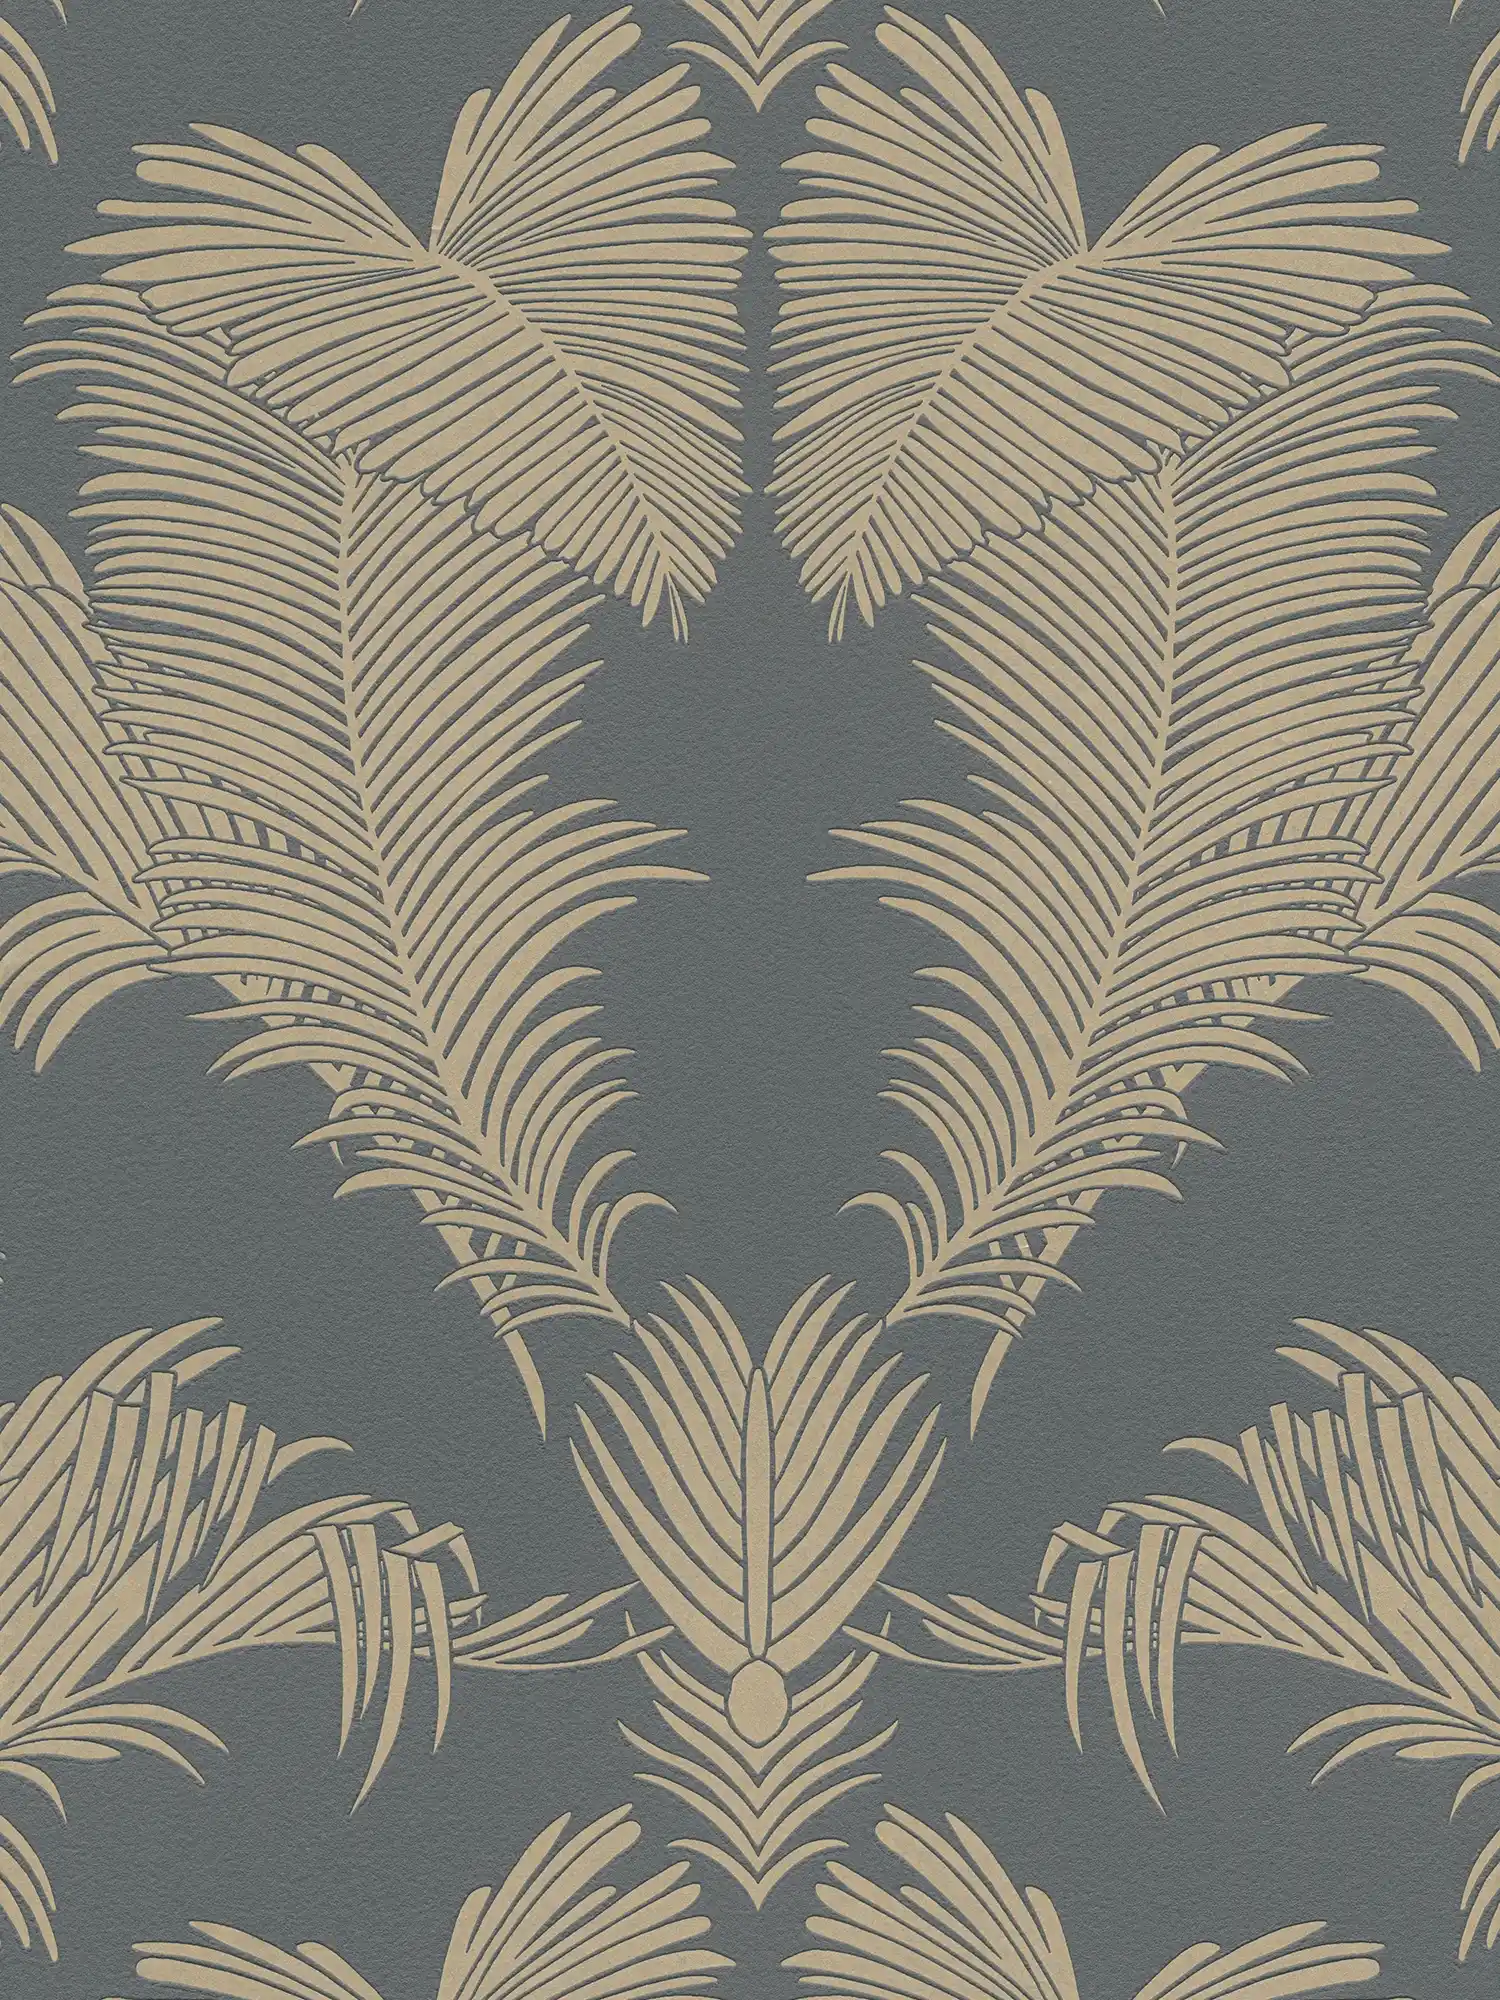             Palmbladeren behang grijs & goud met structuur & metallic effect
        